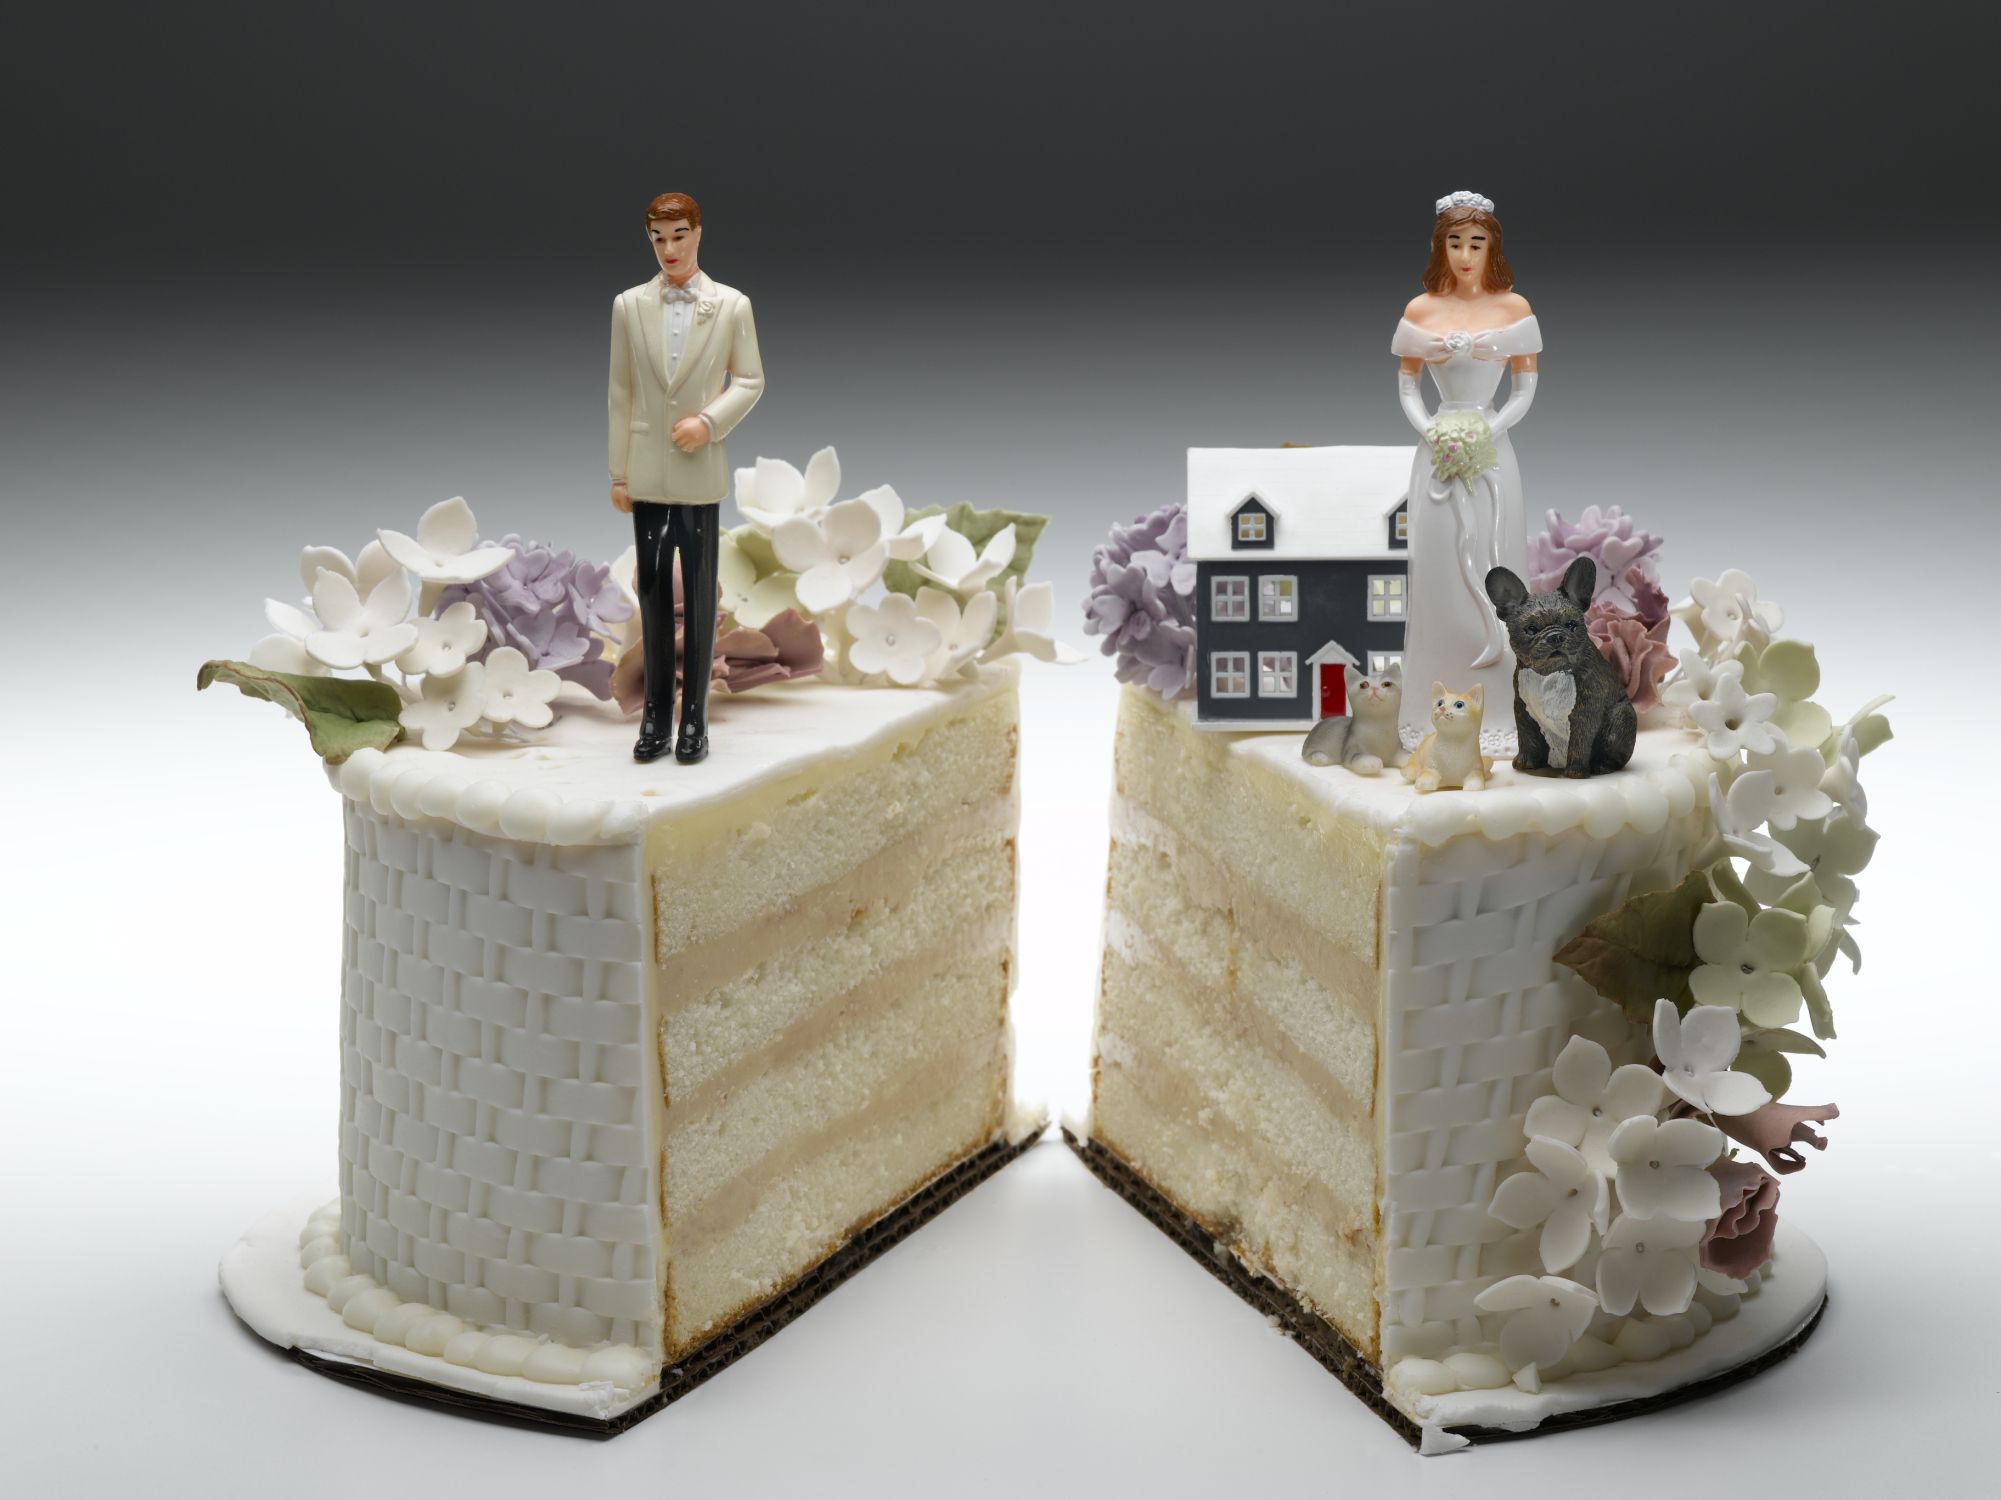 7 segnali che possono annunciare il divorzio